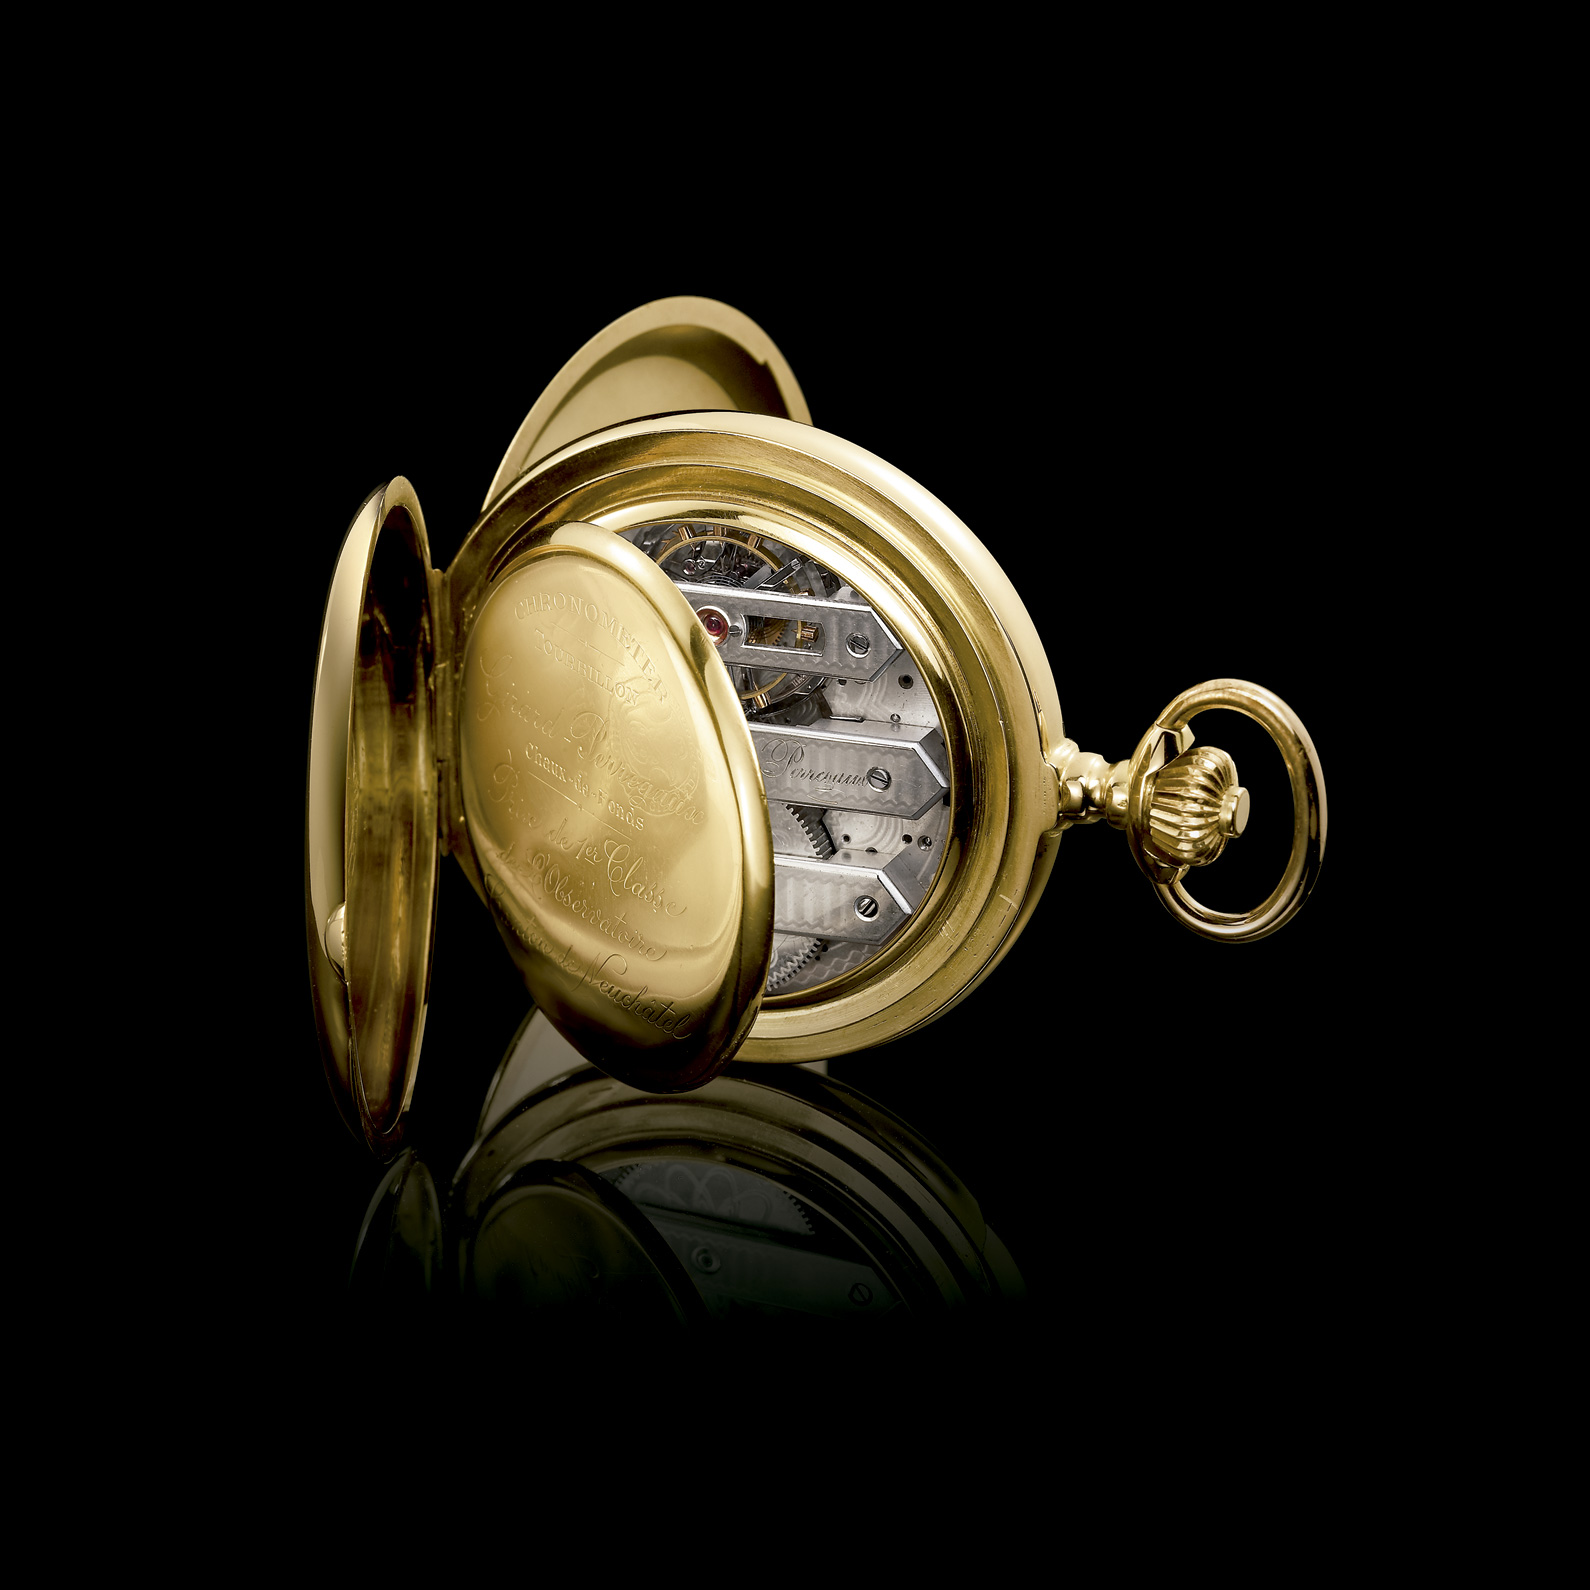 Reloj de bolsillo de oro amarillo firmado por Girard-Perregaux, alrededor de 1860